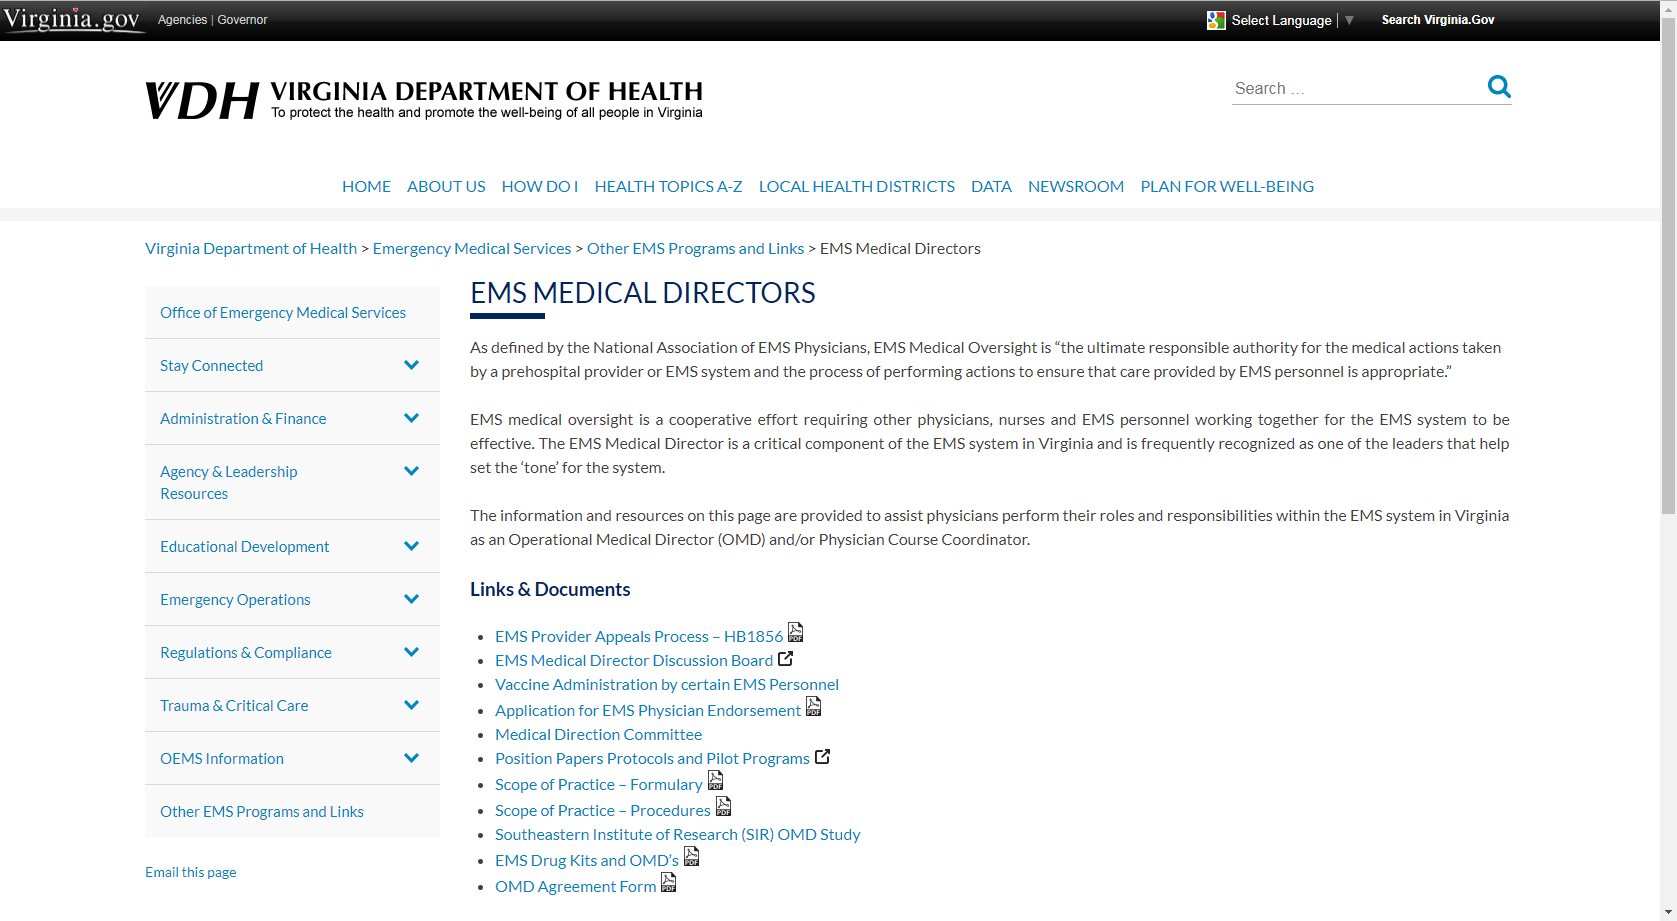 EMS Medical Directors